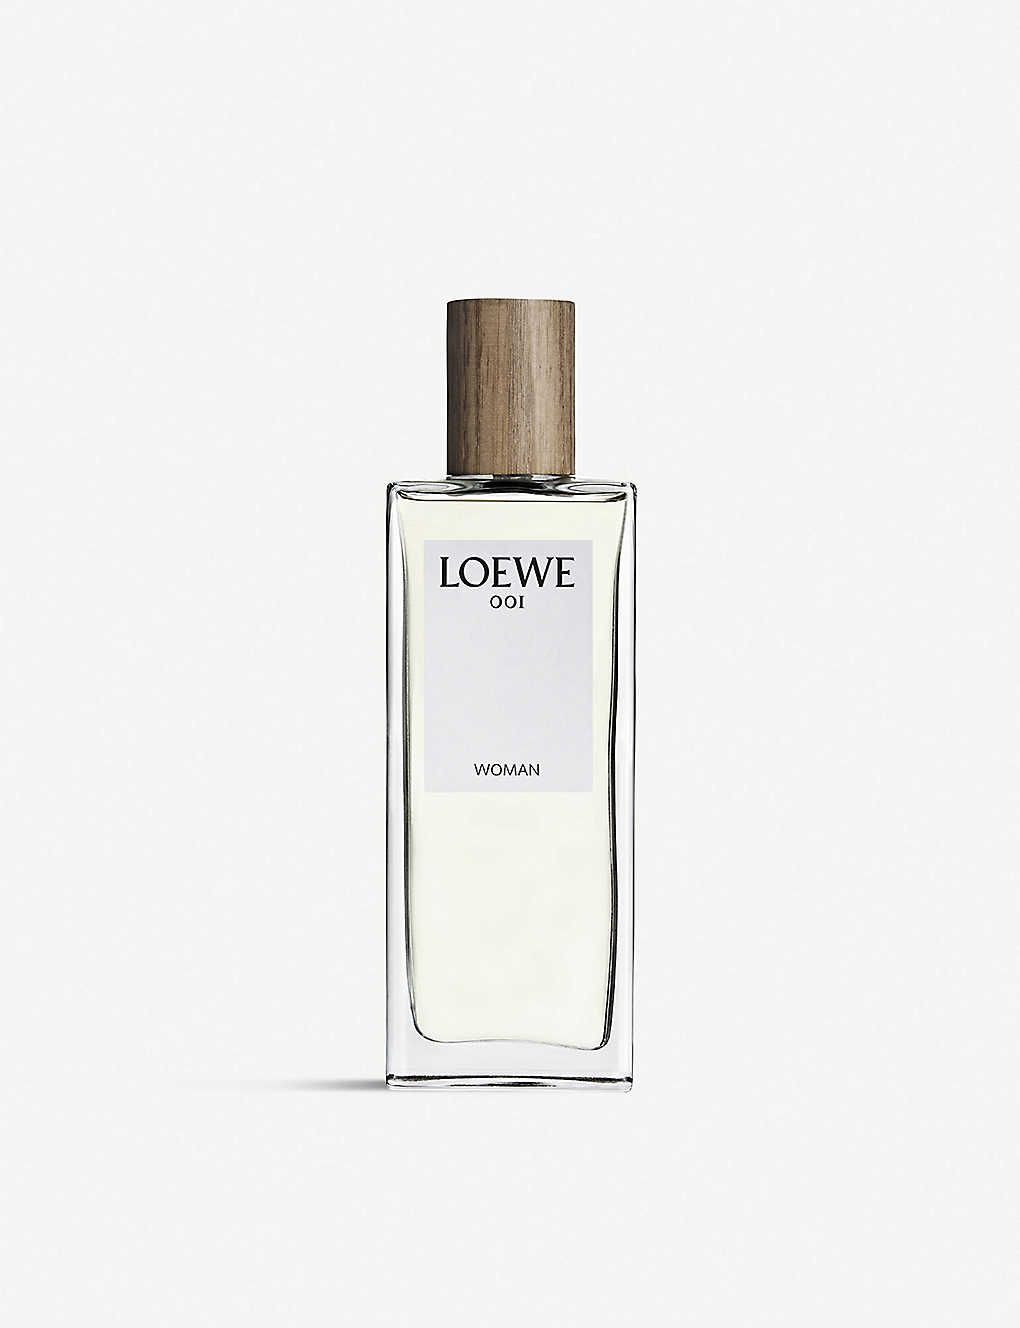 Loewe 001 Woman Eau de Parfum | Selfridges